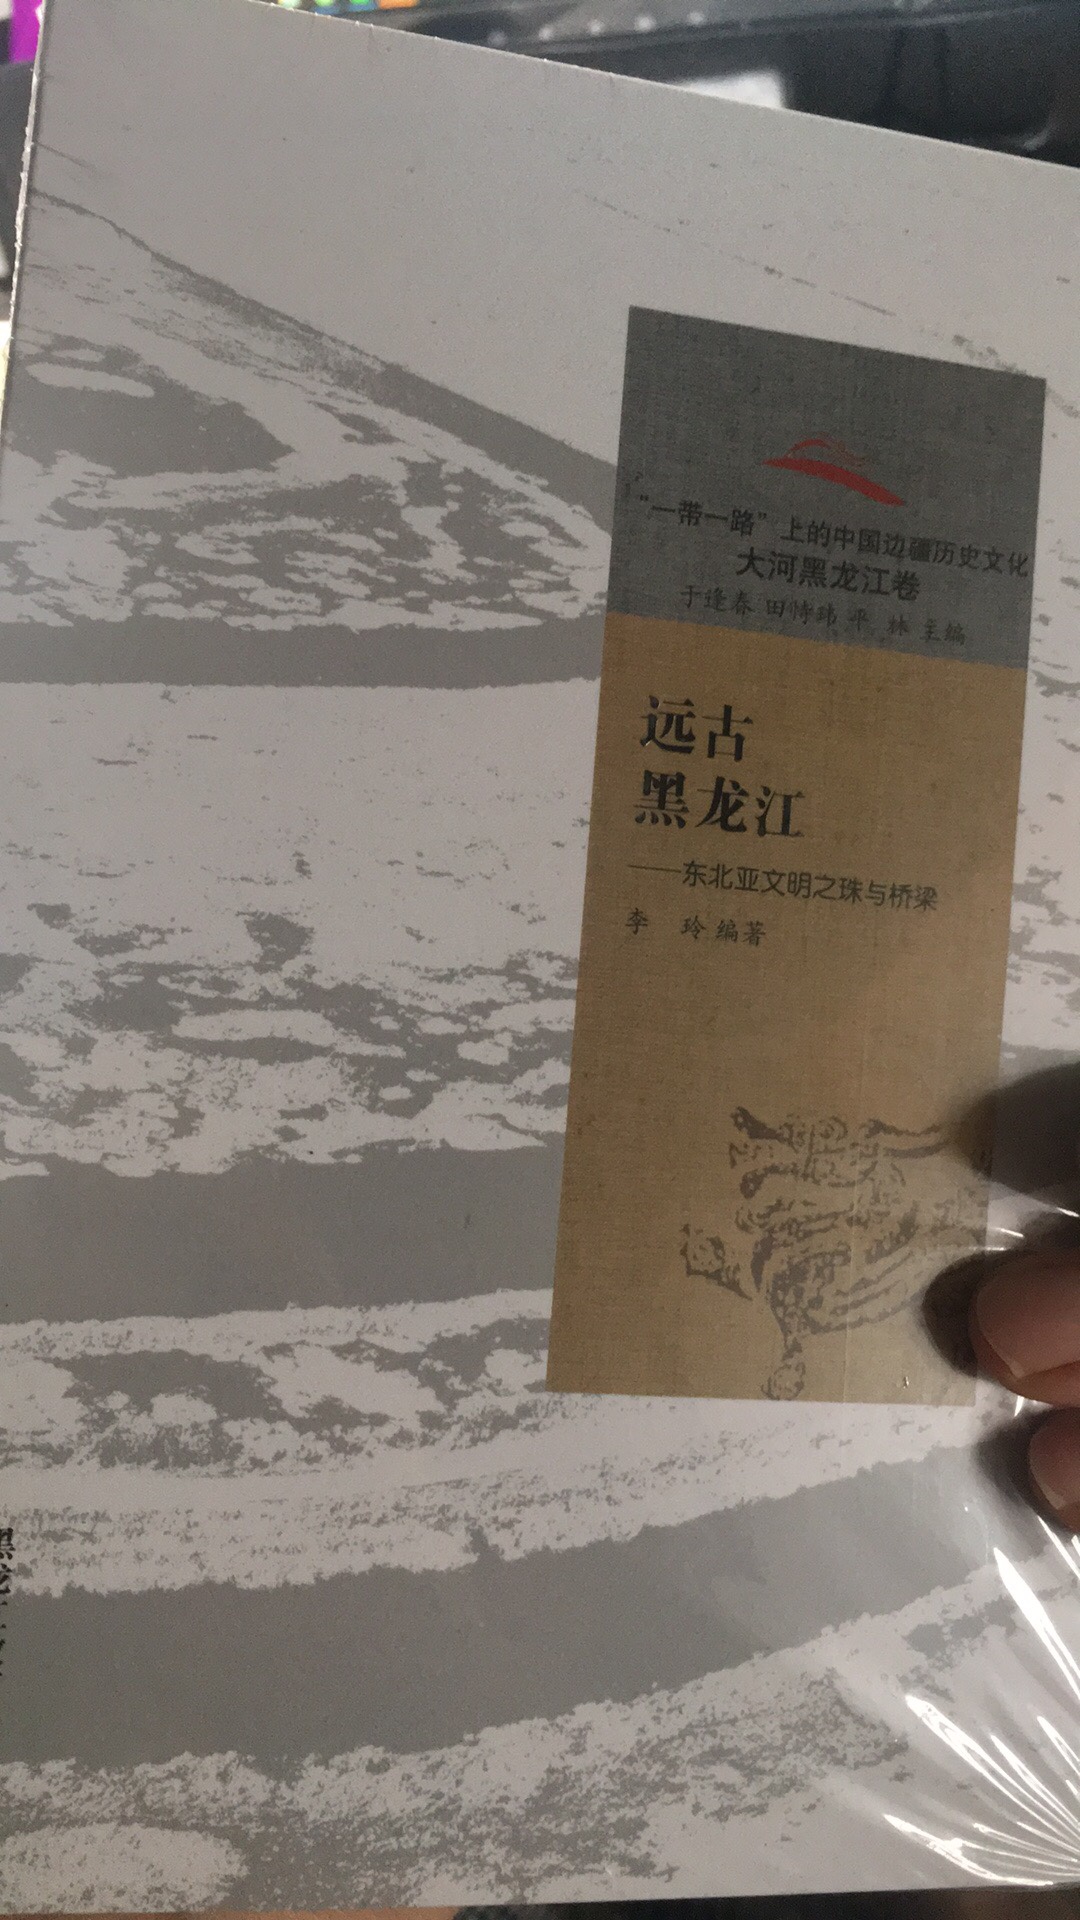 远古黑龙江东北亚文明之珠与桥梁这套书不是很厚，活动入凑单，可以买来看看了解一下。